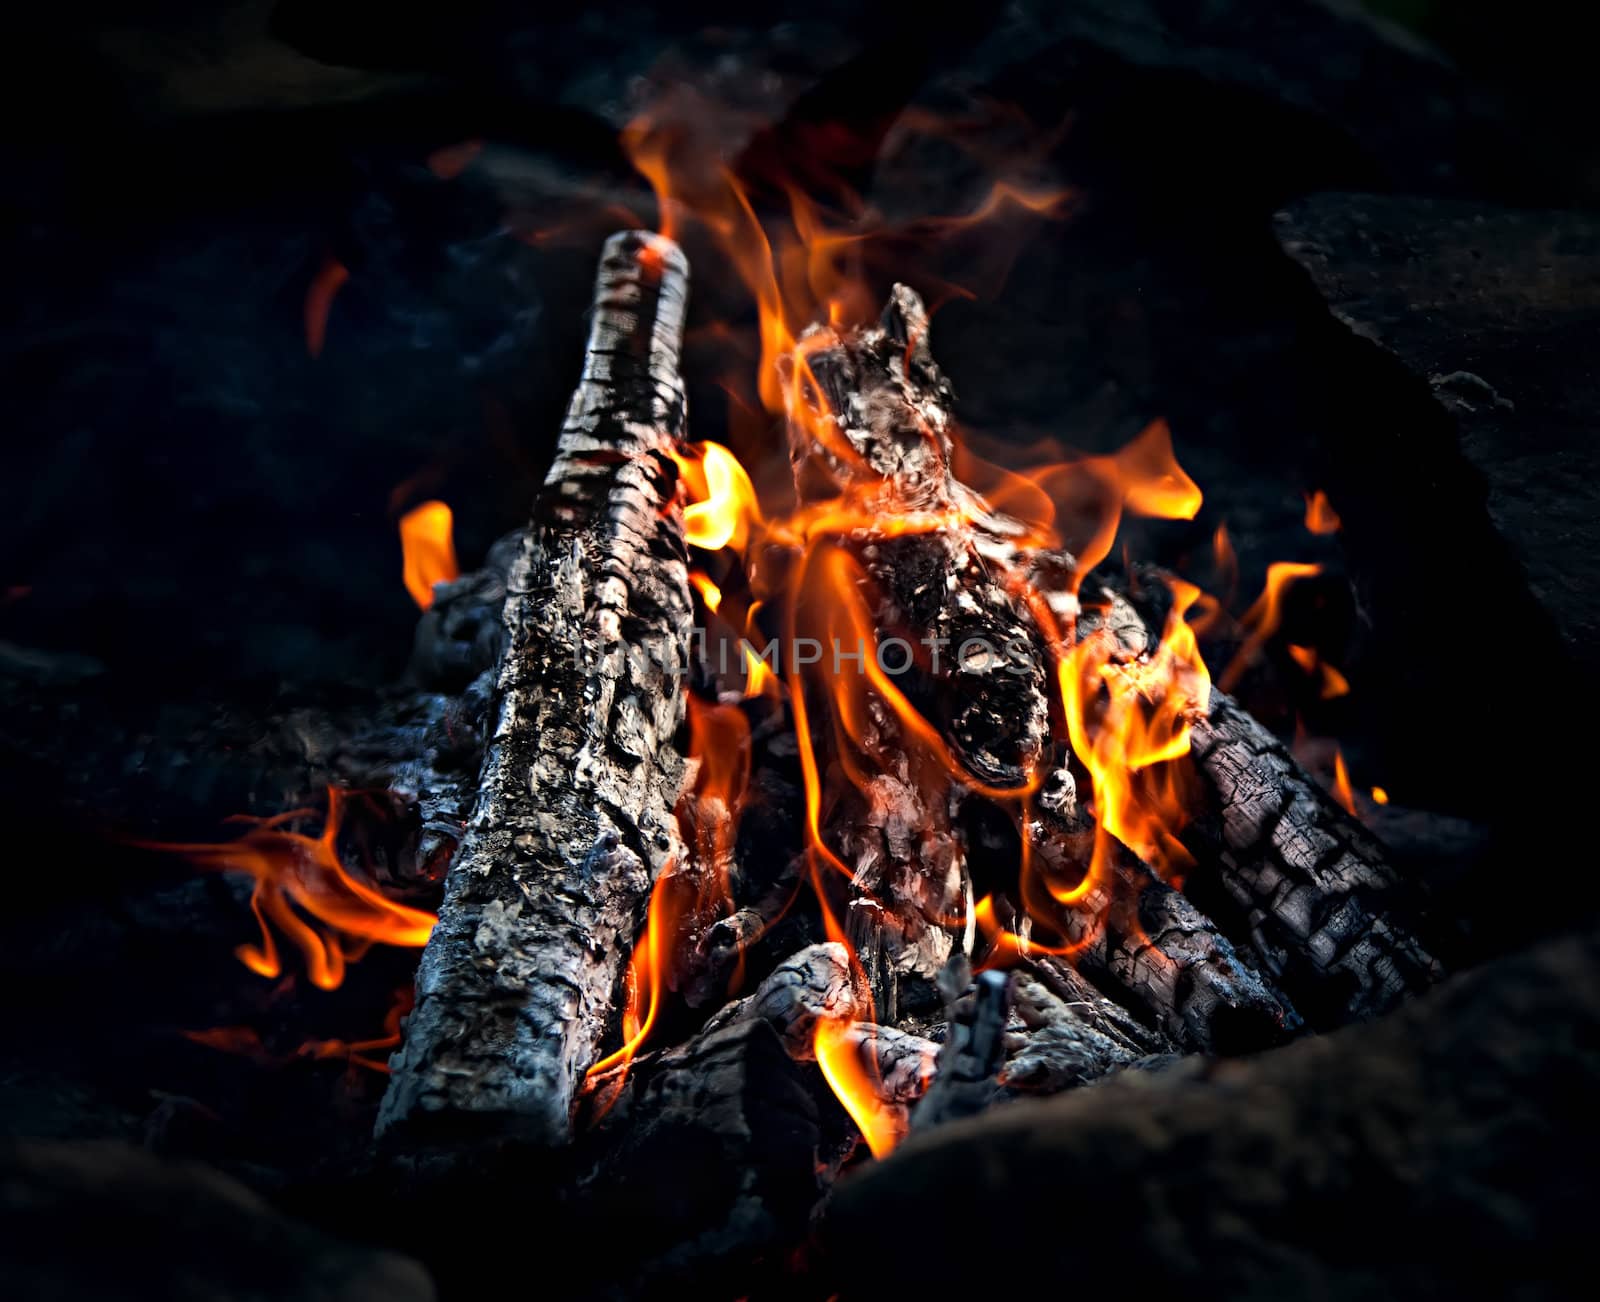 Bonfire. Hot Coals by palinchak